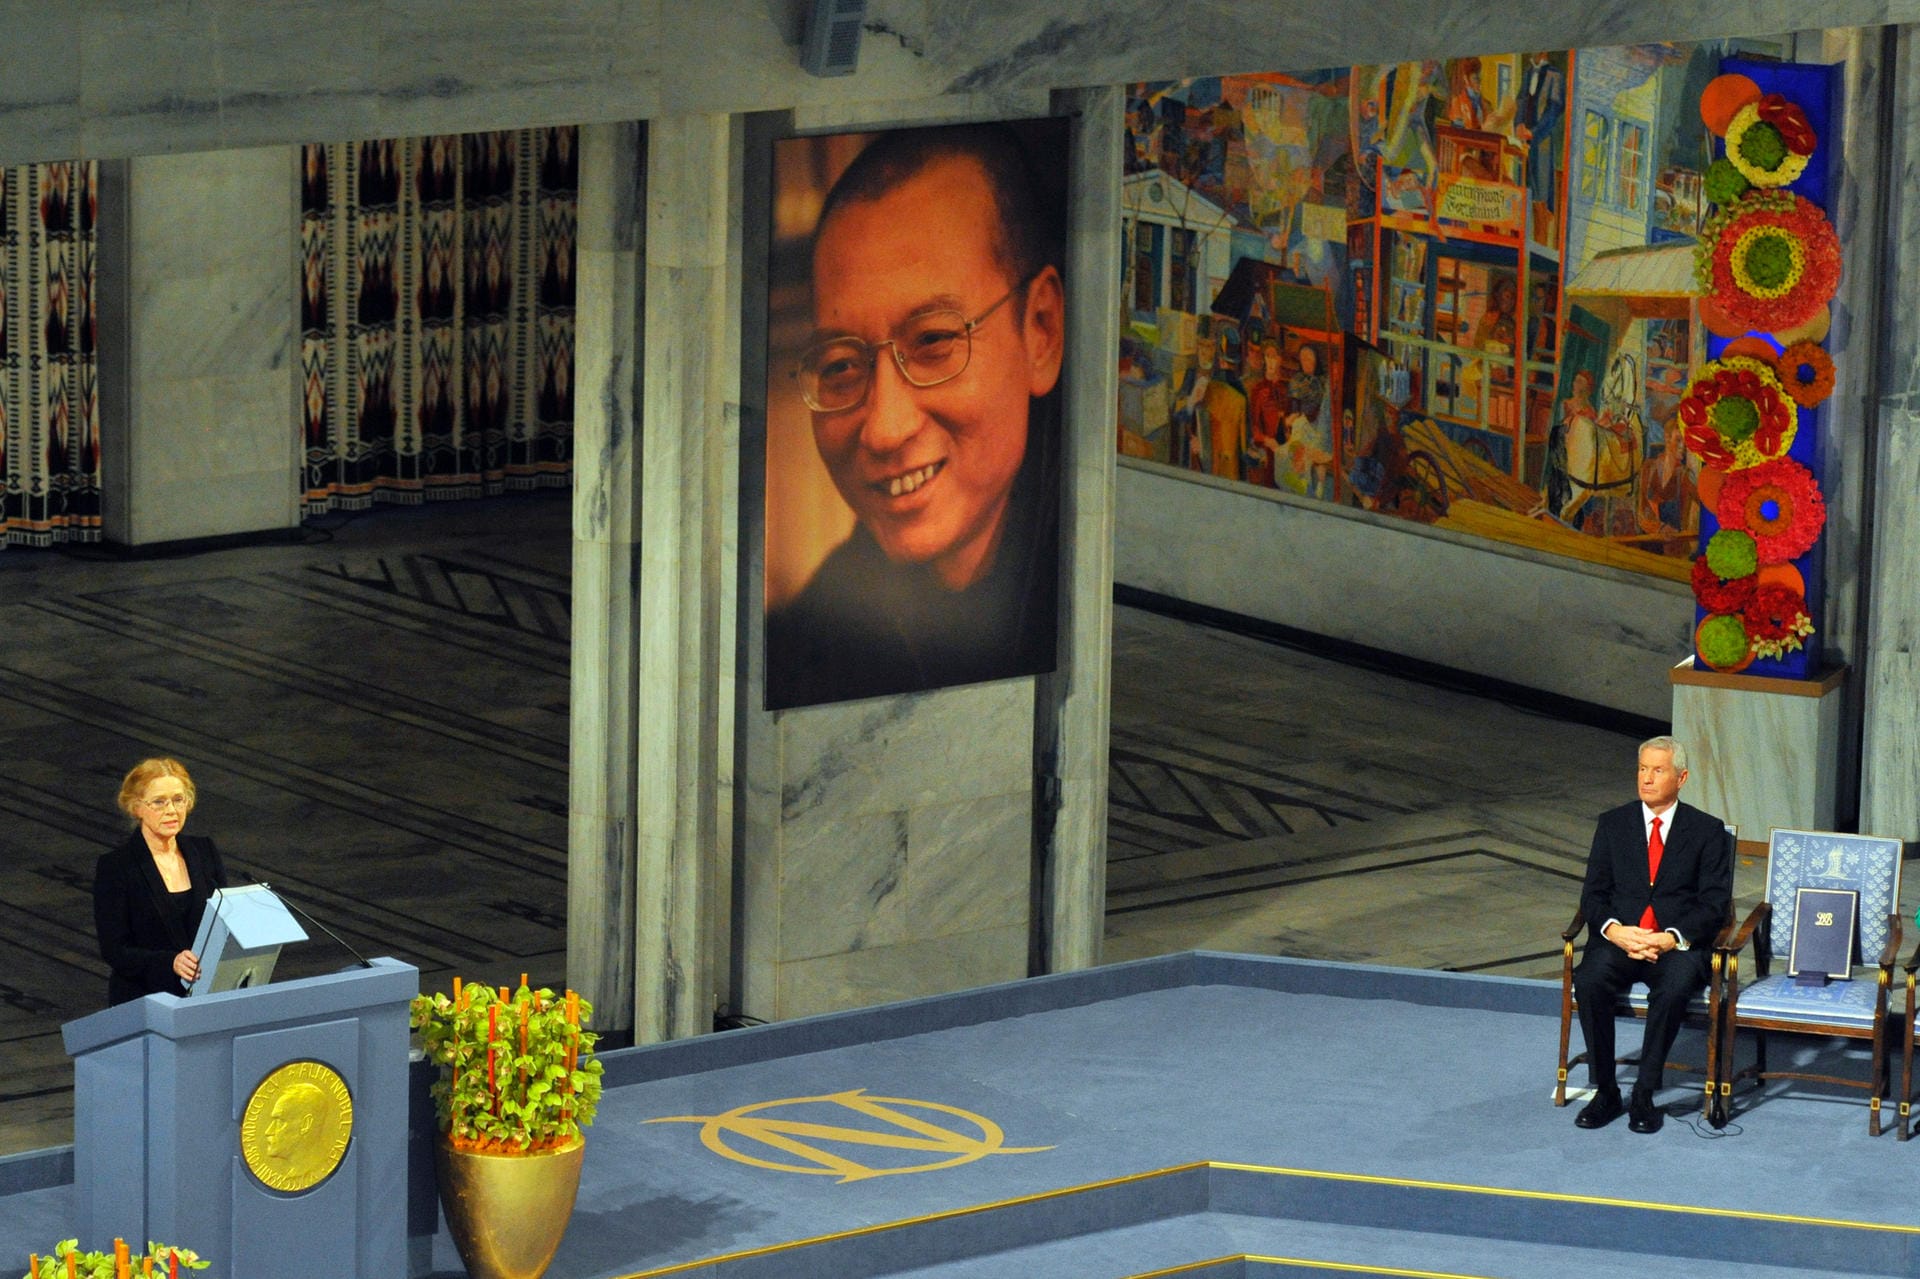 2010 ging der Friedensnobelpreis an Liu Xiaobo. Der chinesische Schriftsteller konnte selbst nicht an der Preisverleihung teilnehmen, da er zu diesem Zeitpunkt im Gefängnis saß. Die norwegische Schauspielerin Liv Ullmann las einen Text vor. Xiaobo erhielt die Auszeichnung für seinen langen und gewaltfreien Kampf für die grundlegenden Menschenrechte in China.